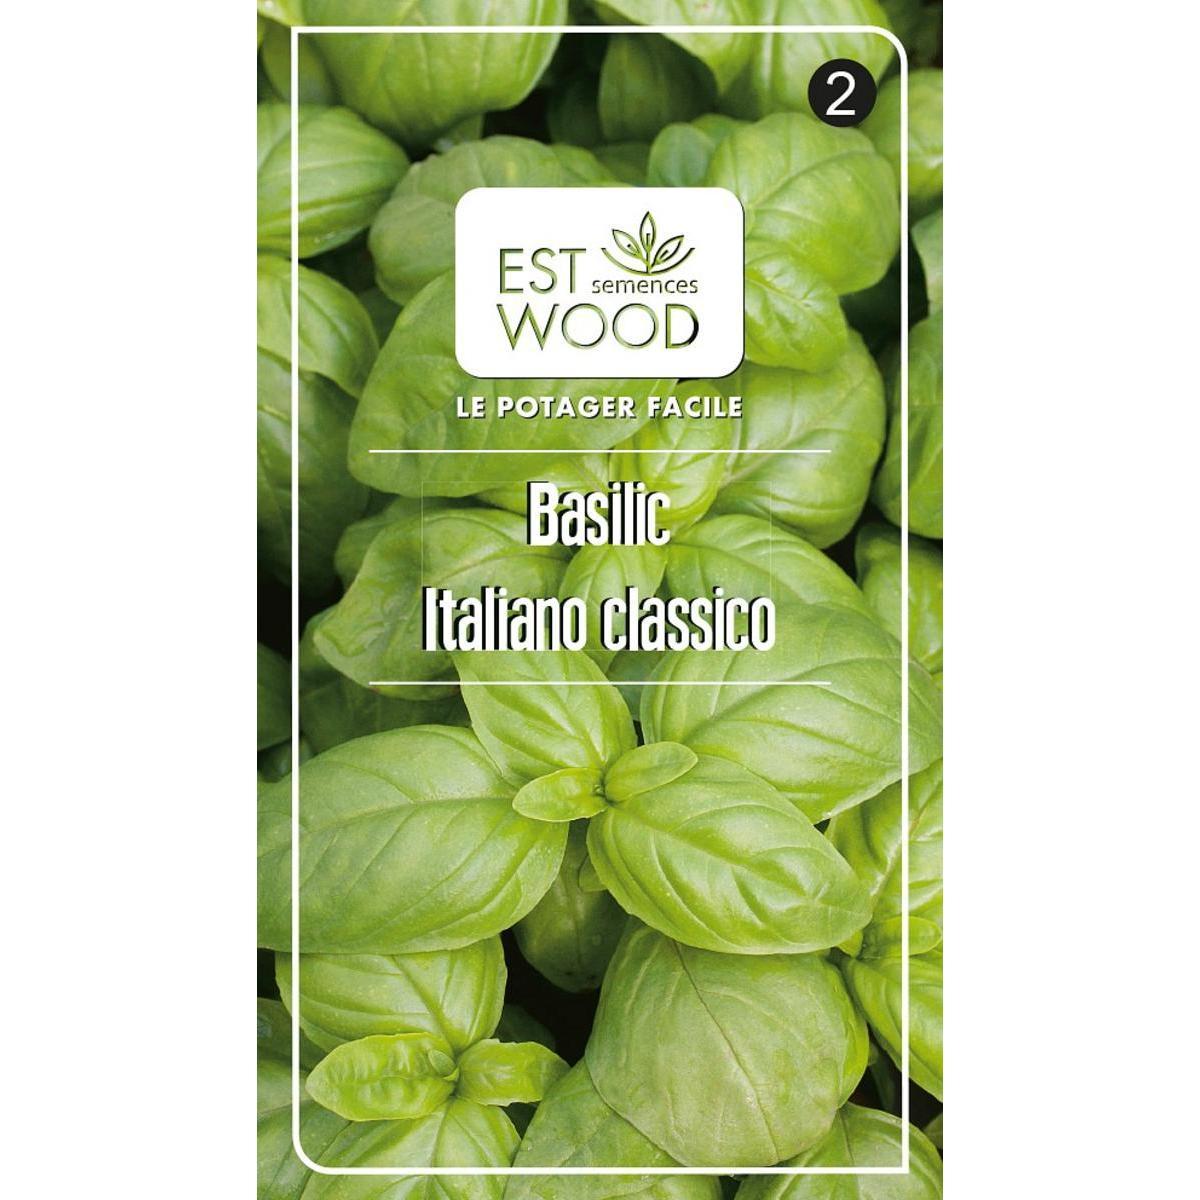 Semence végétale - 1 sachet de 2 g - Basilic doux Italien